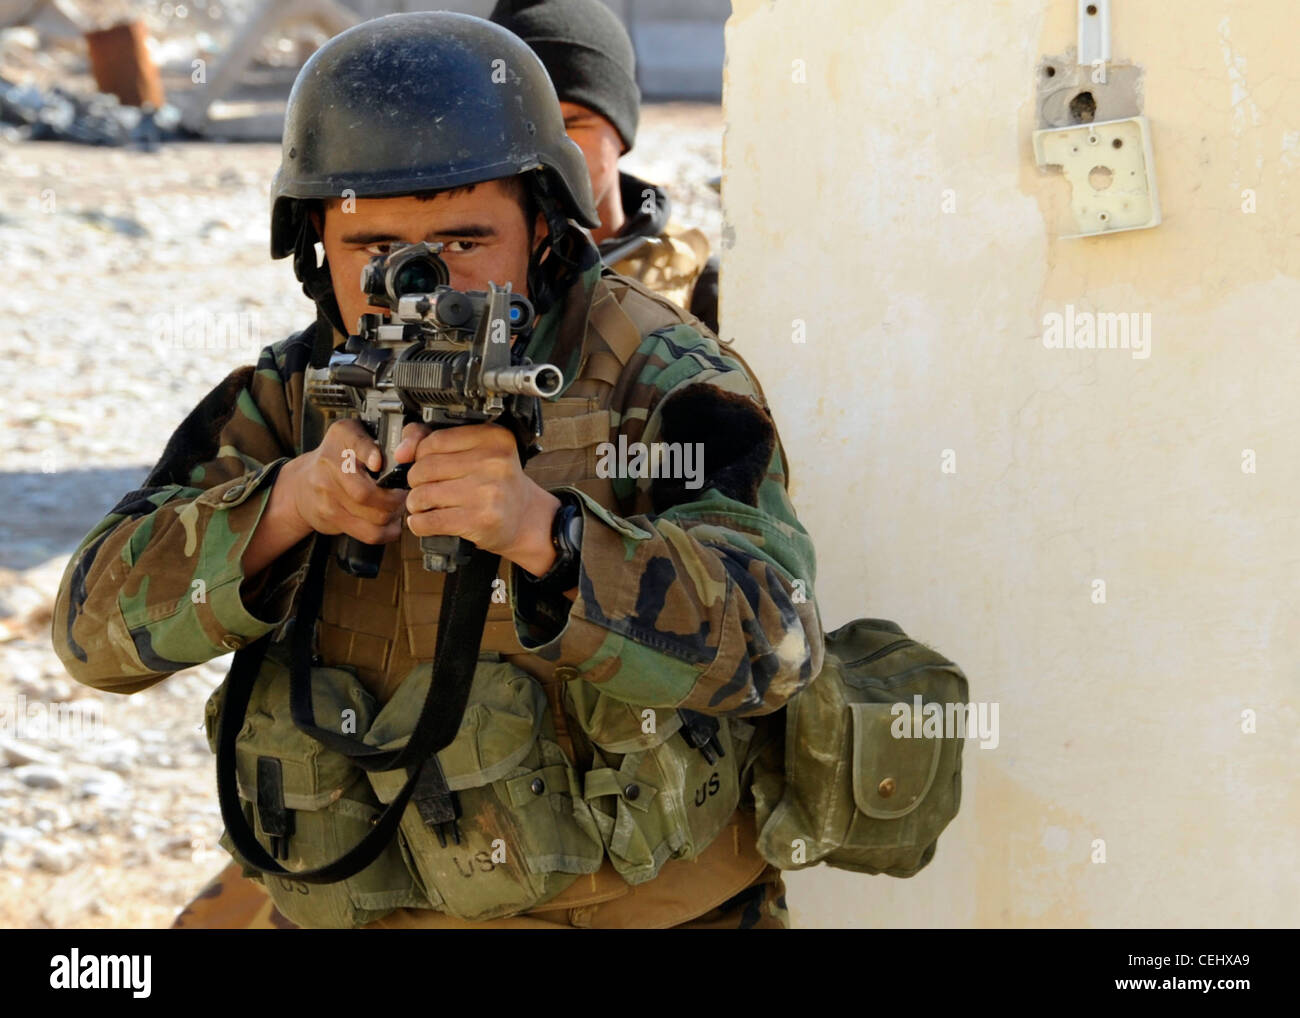 Ein Soldat des 8. Kommandos Kandak räumt während einer Trainingsübung im Bezirk Tarin Kowt, Provinz Uruzgan, Afghanistan, Februar 14, einen Raum. Das 8. Kommando Kandak arbeitet mit den Special Operations Forces der Koalition zusammen, um Operationen in den Provinzen Uruzgan und Zabul durchzuführen. Stockfoto